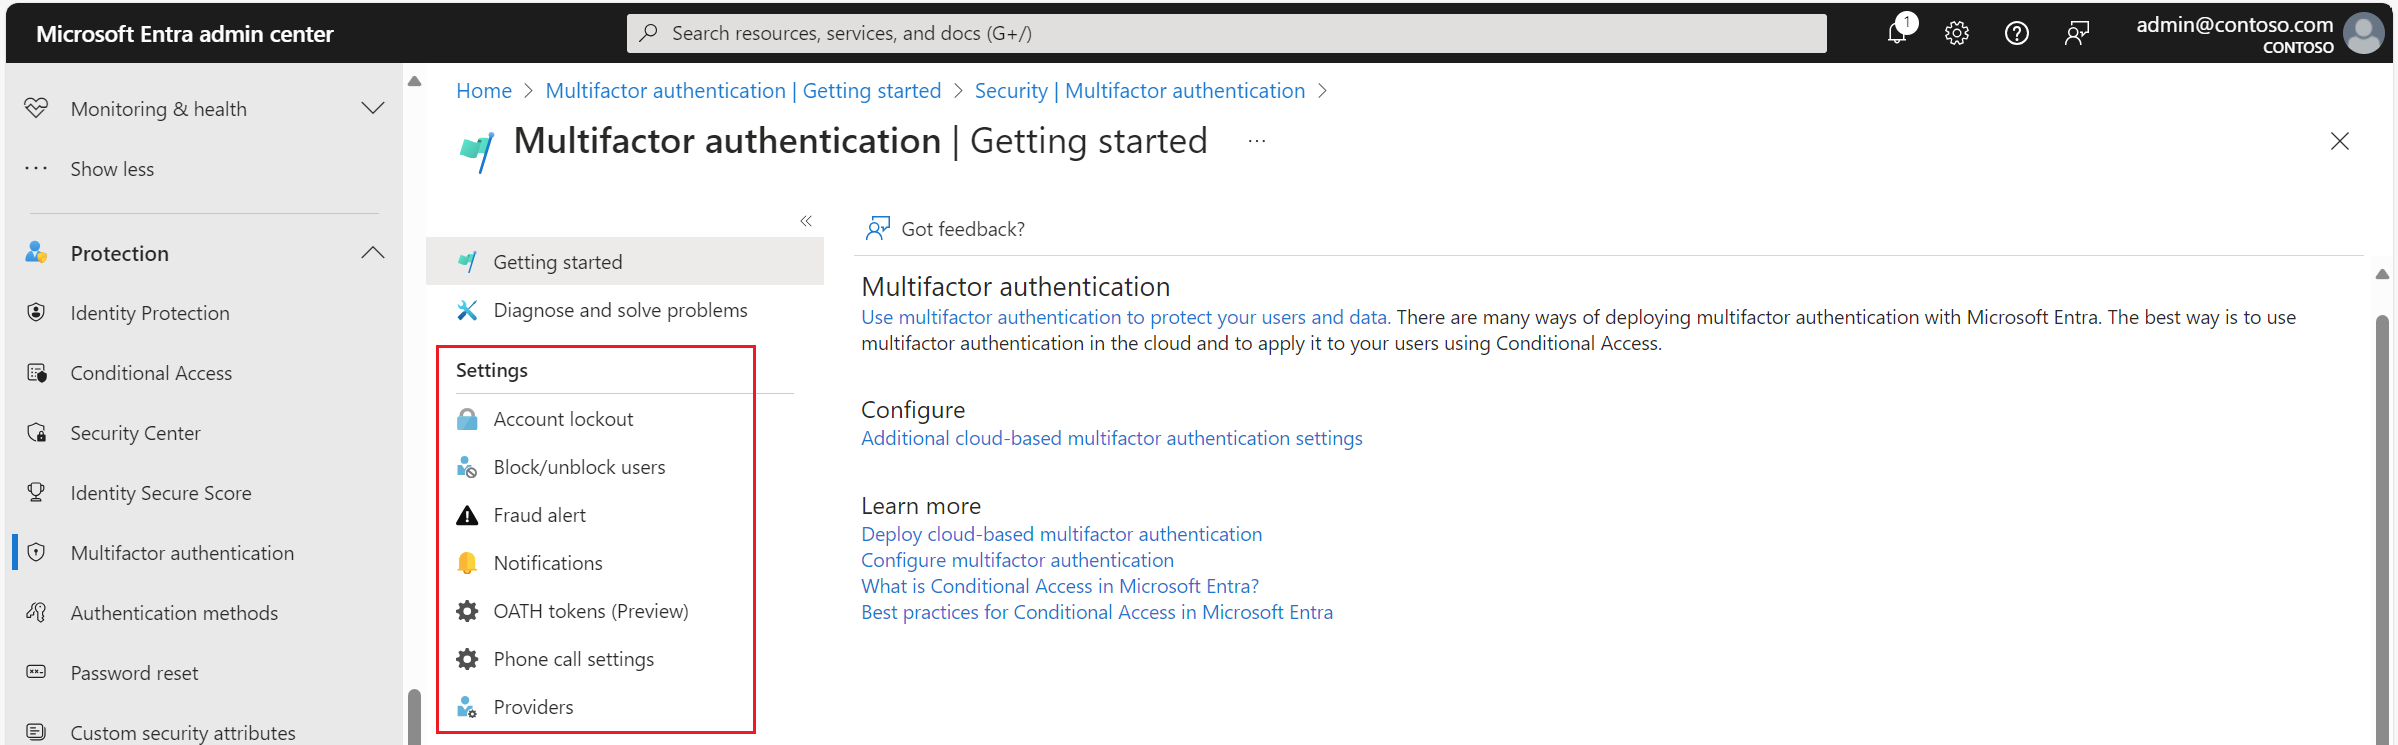 Configurações de autenticação multifator do Microsoft Entra